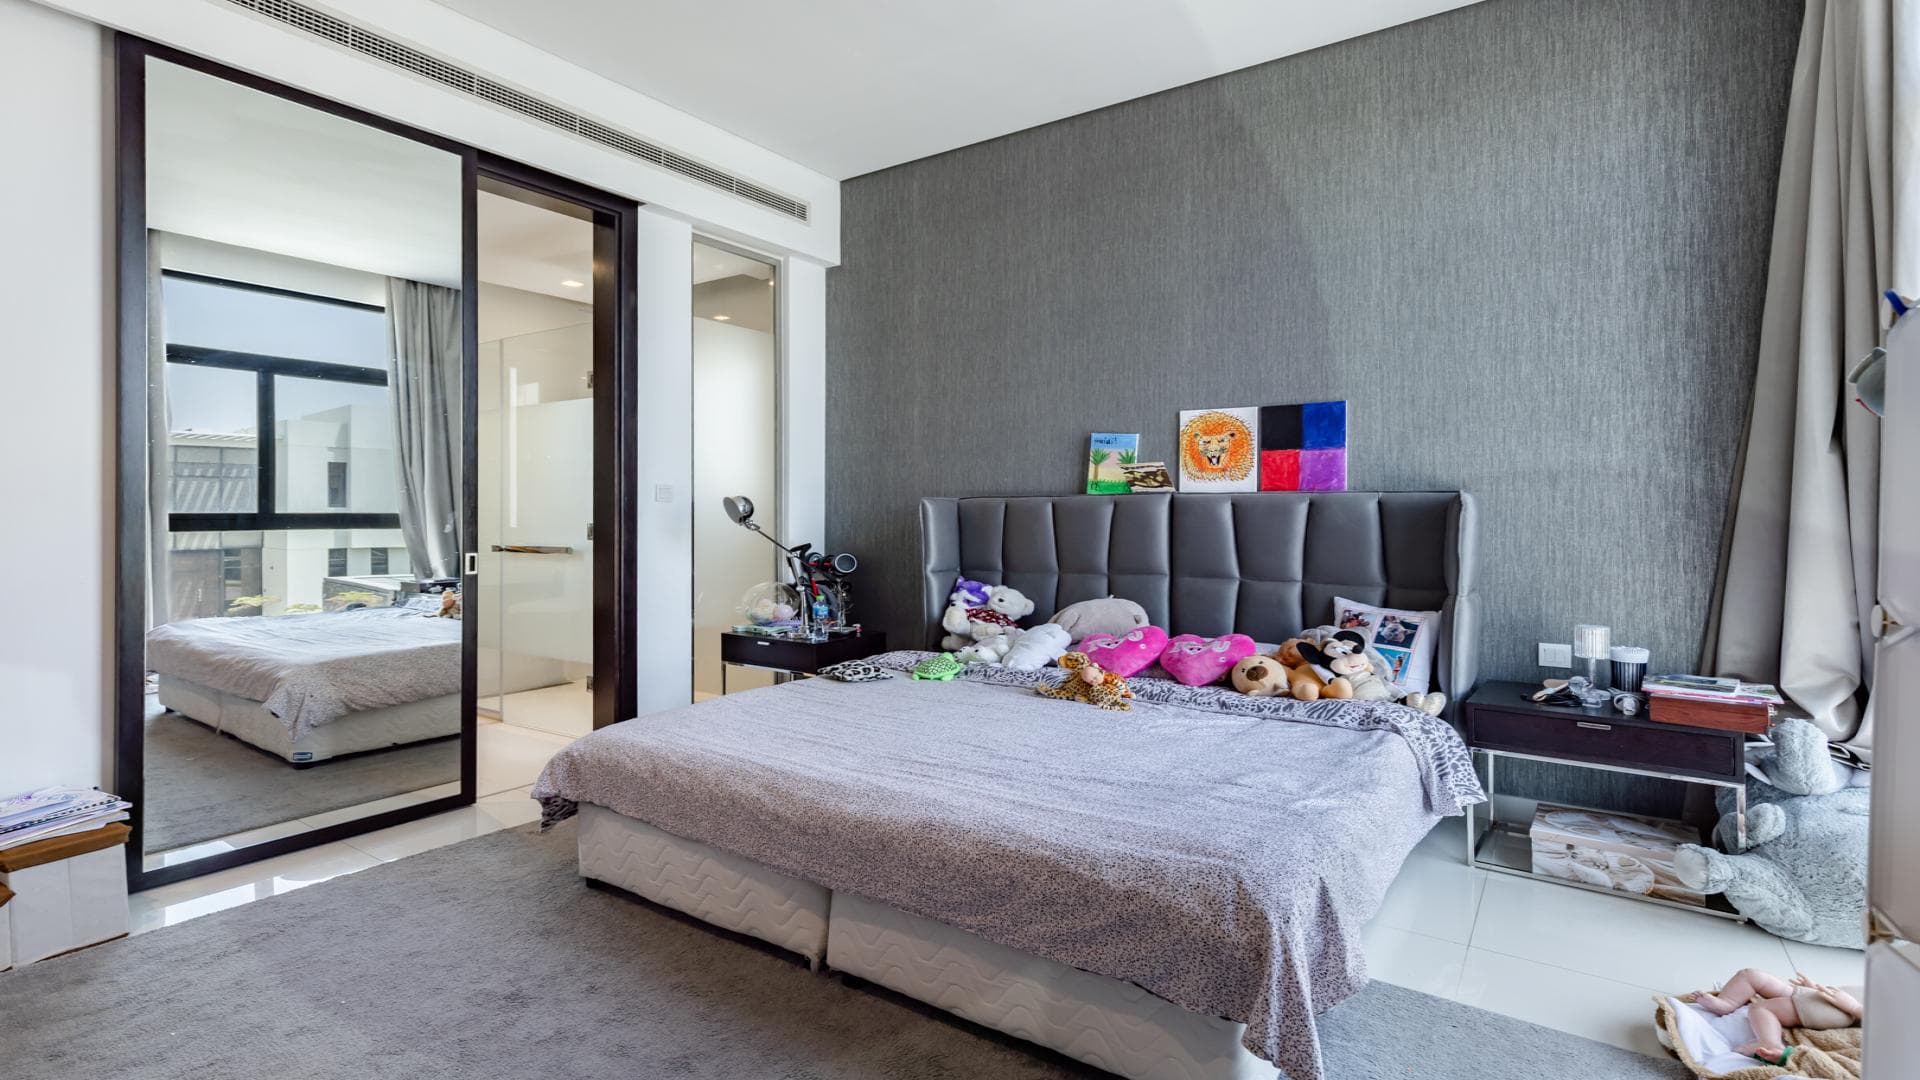 5 Bedroom Villa For Rent Tasameem Tower 1 Lp21164 19b44398a542ec00.jpg